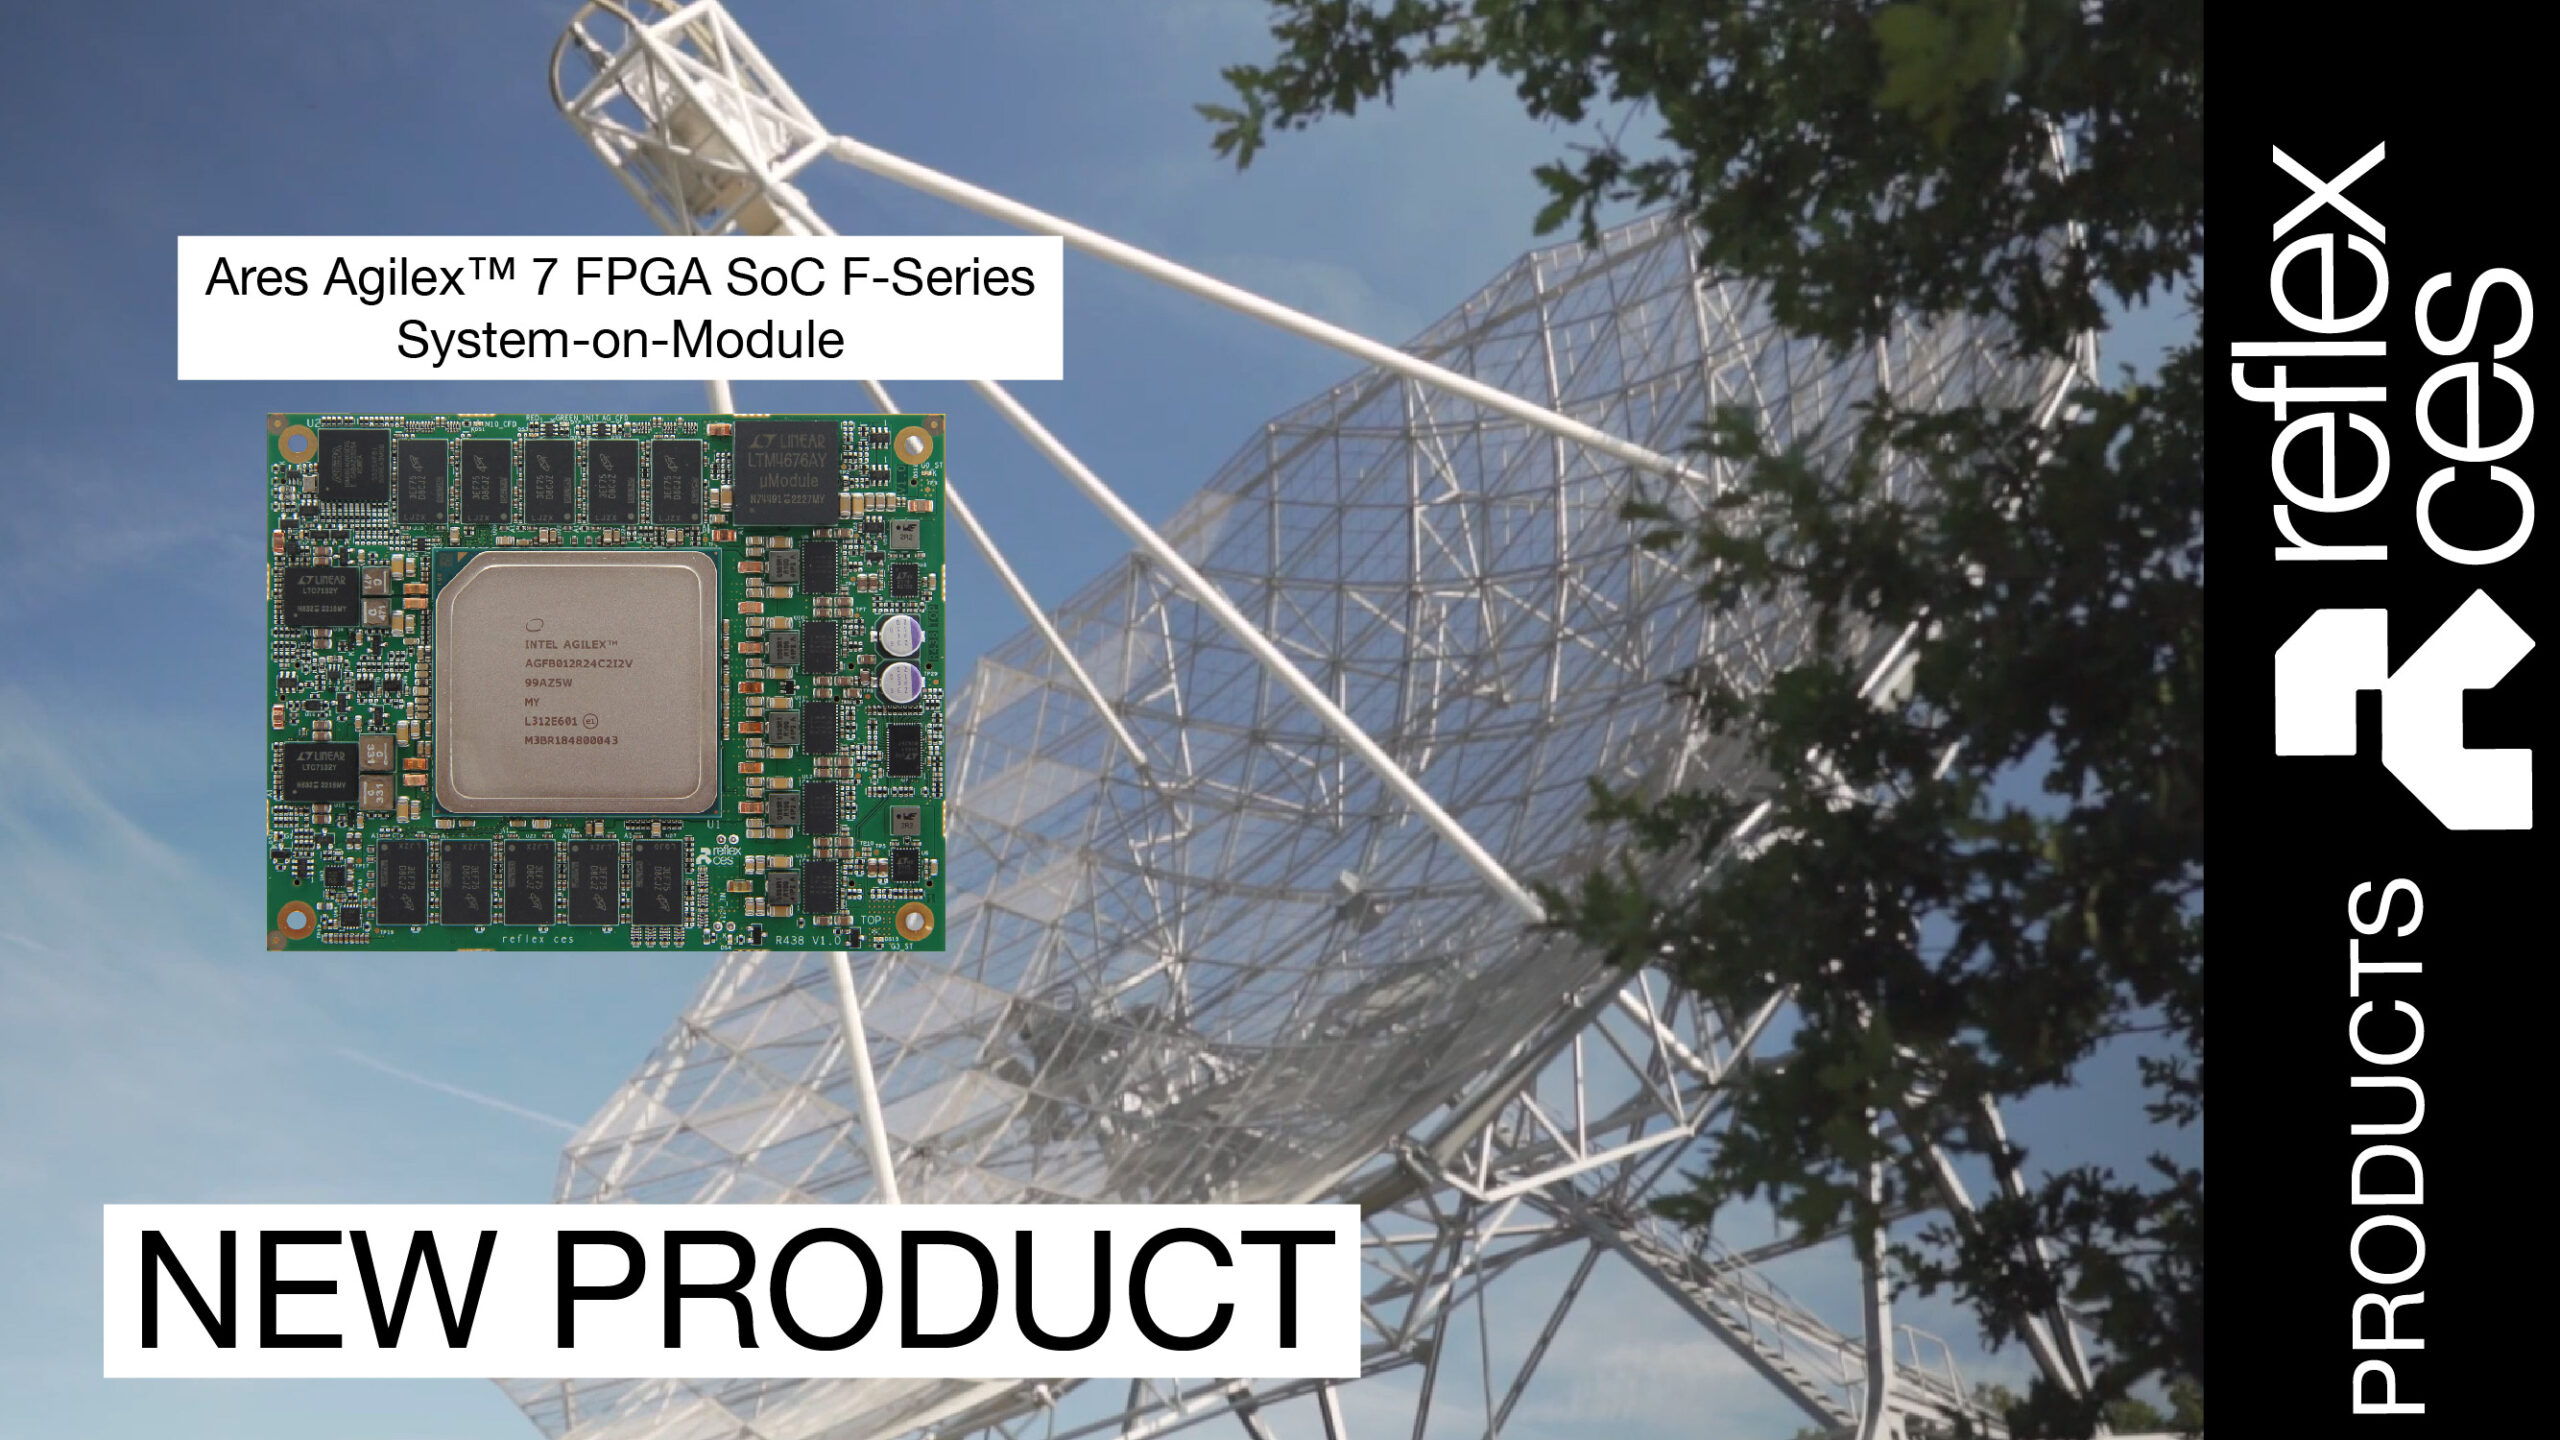 [ VIDEO ] NEW PRODUCT | Introduction au module Ares basé sur un FPGA Agilex™ 7 SoC F-Series, par reflex ces – in english